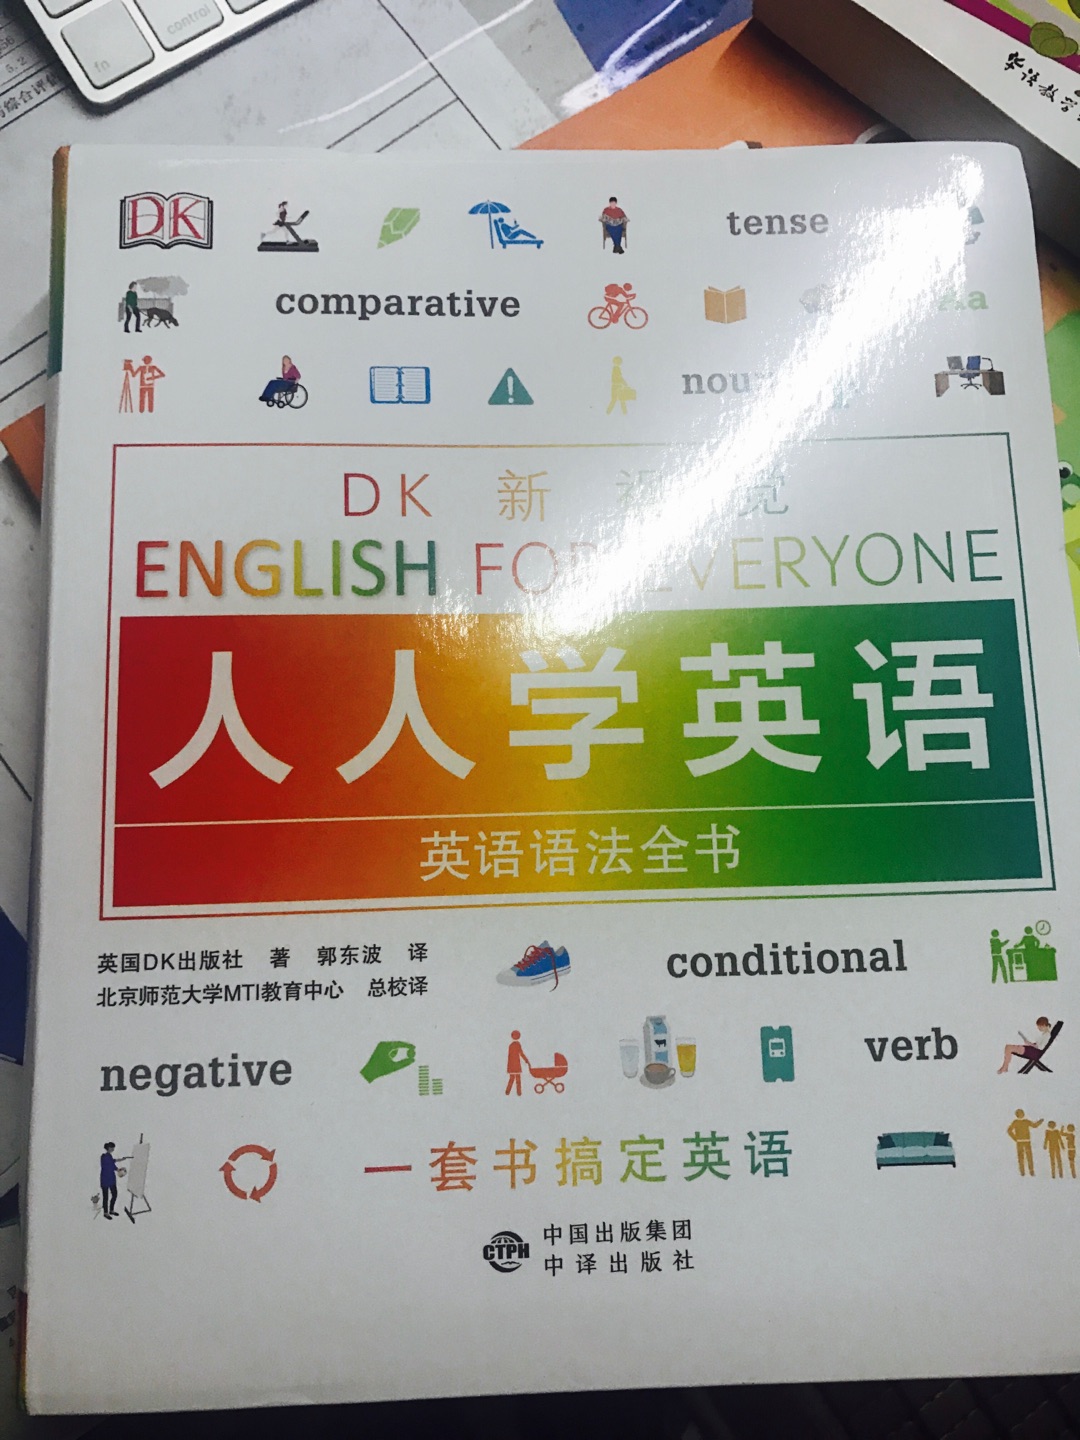 ??英语语法全书/DK新视觉 English for Everyone 人人学英语 。朋友推荐买的看起来确实挺不错的，难怪一直缺货。